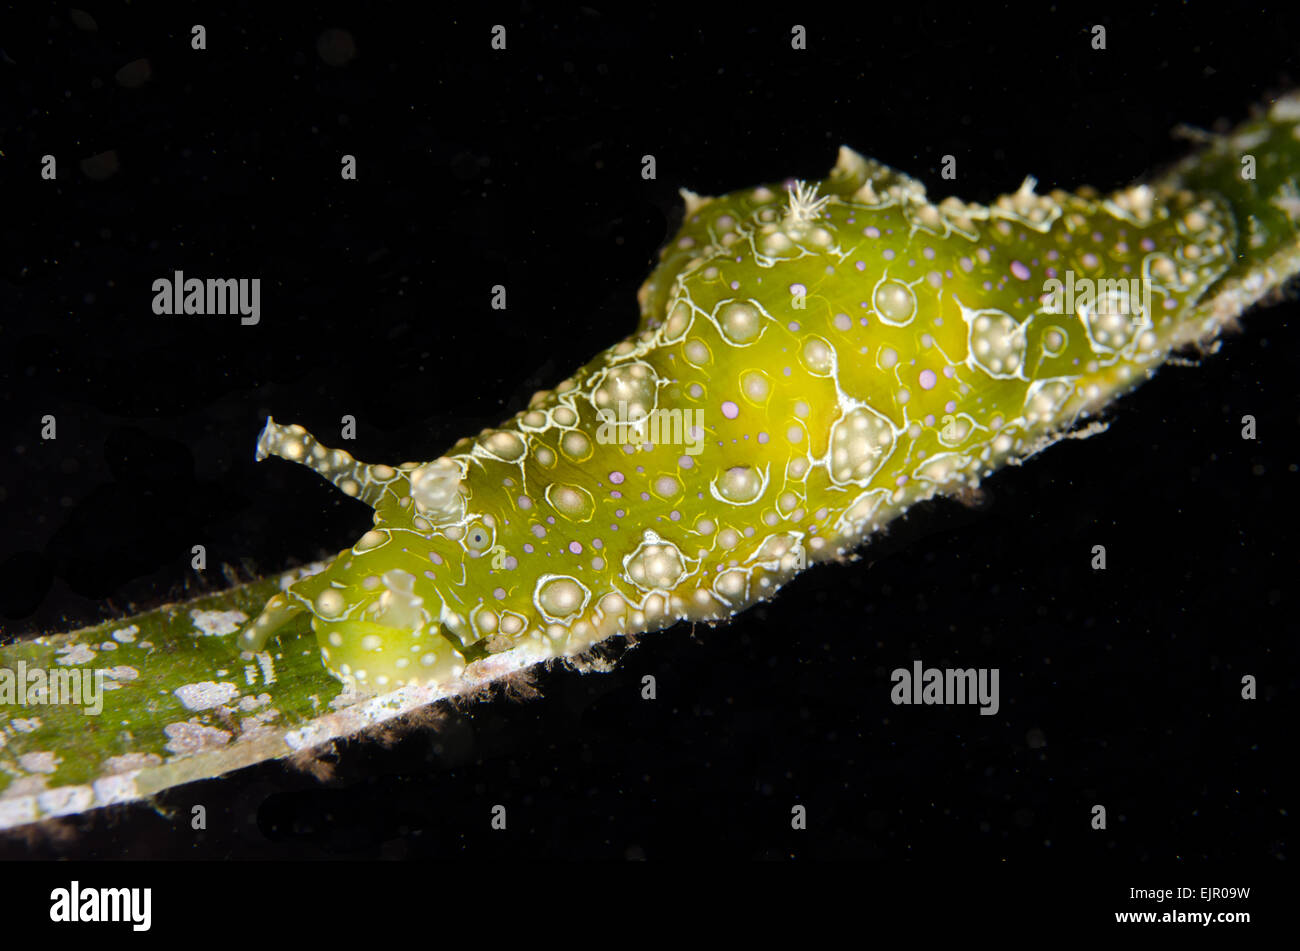 Ramose Sea-lepre (Petalifera ramosa) adulto, poggiante su praterie di notte, Lembeh Straits, Sulawesi, maggiore Sunda Islands, Indonesia, Novembre Foto Stock